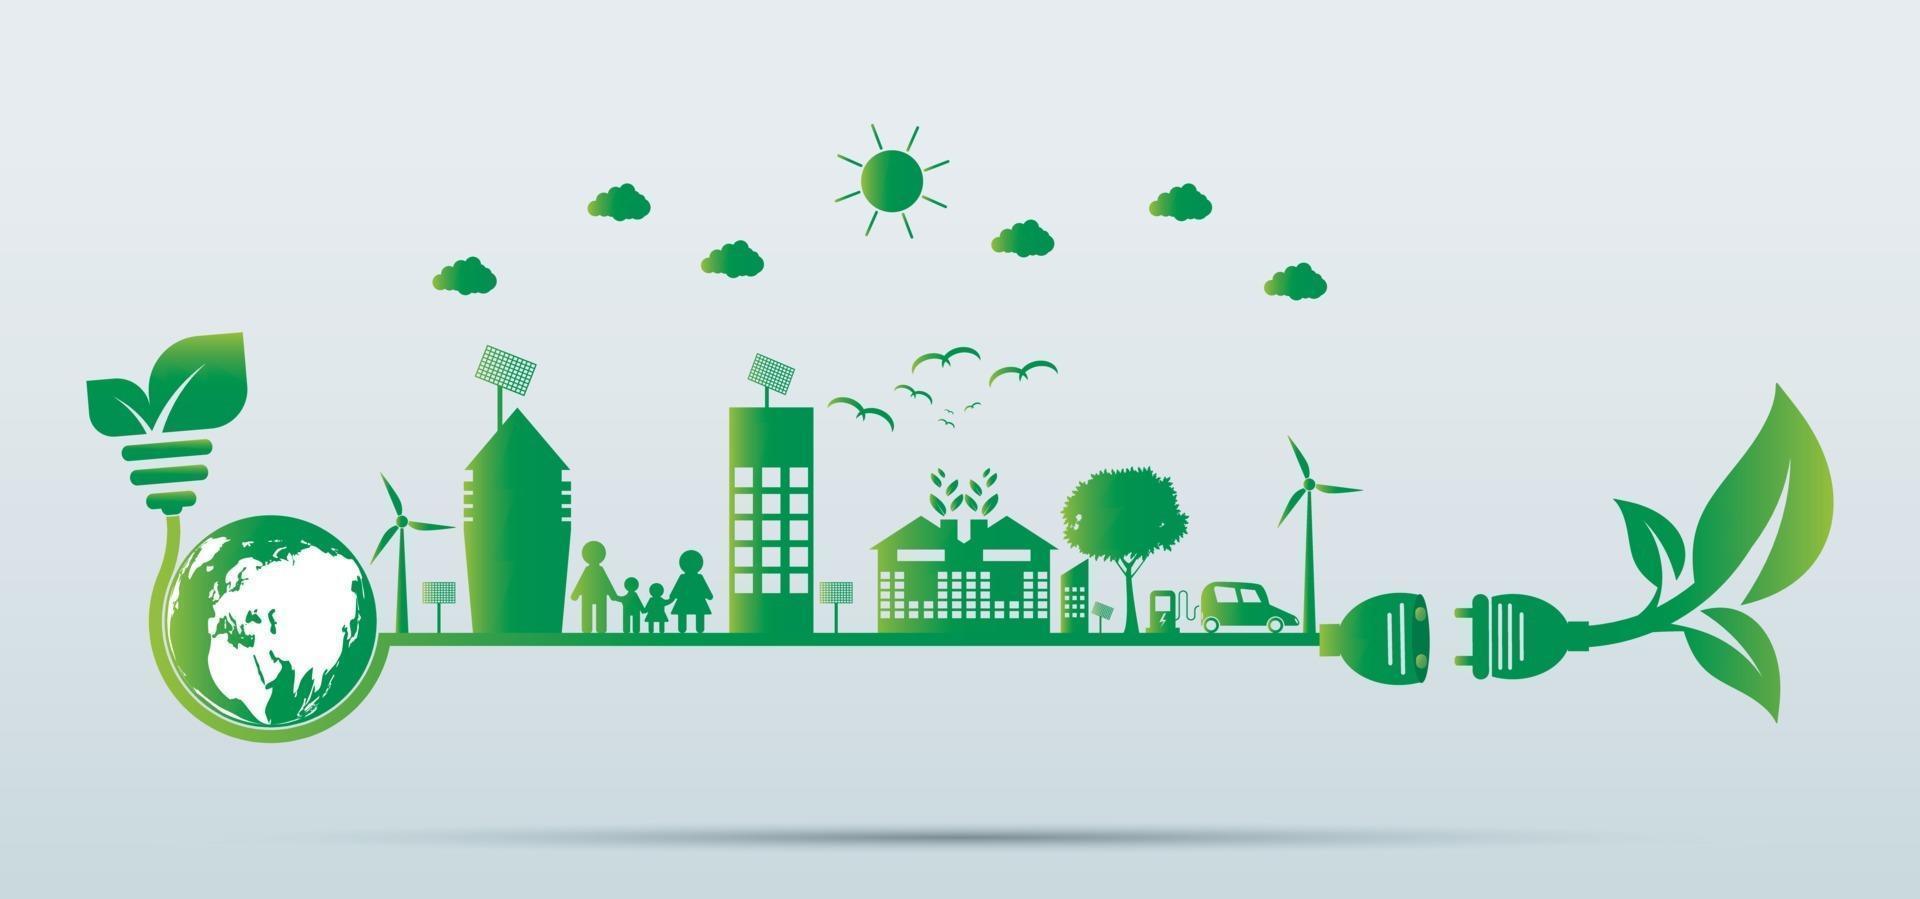 crescita urbana sostenibile in città ecologia città verdi aiutano il mondo con idee di concetti eco-compatibili vettore